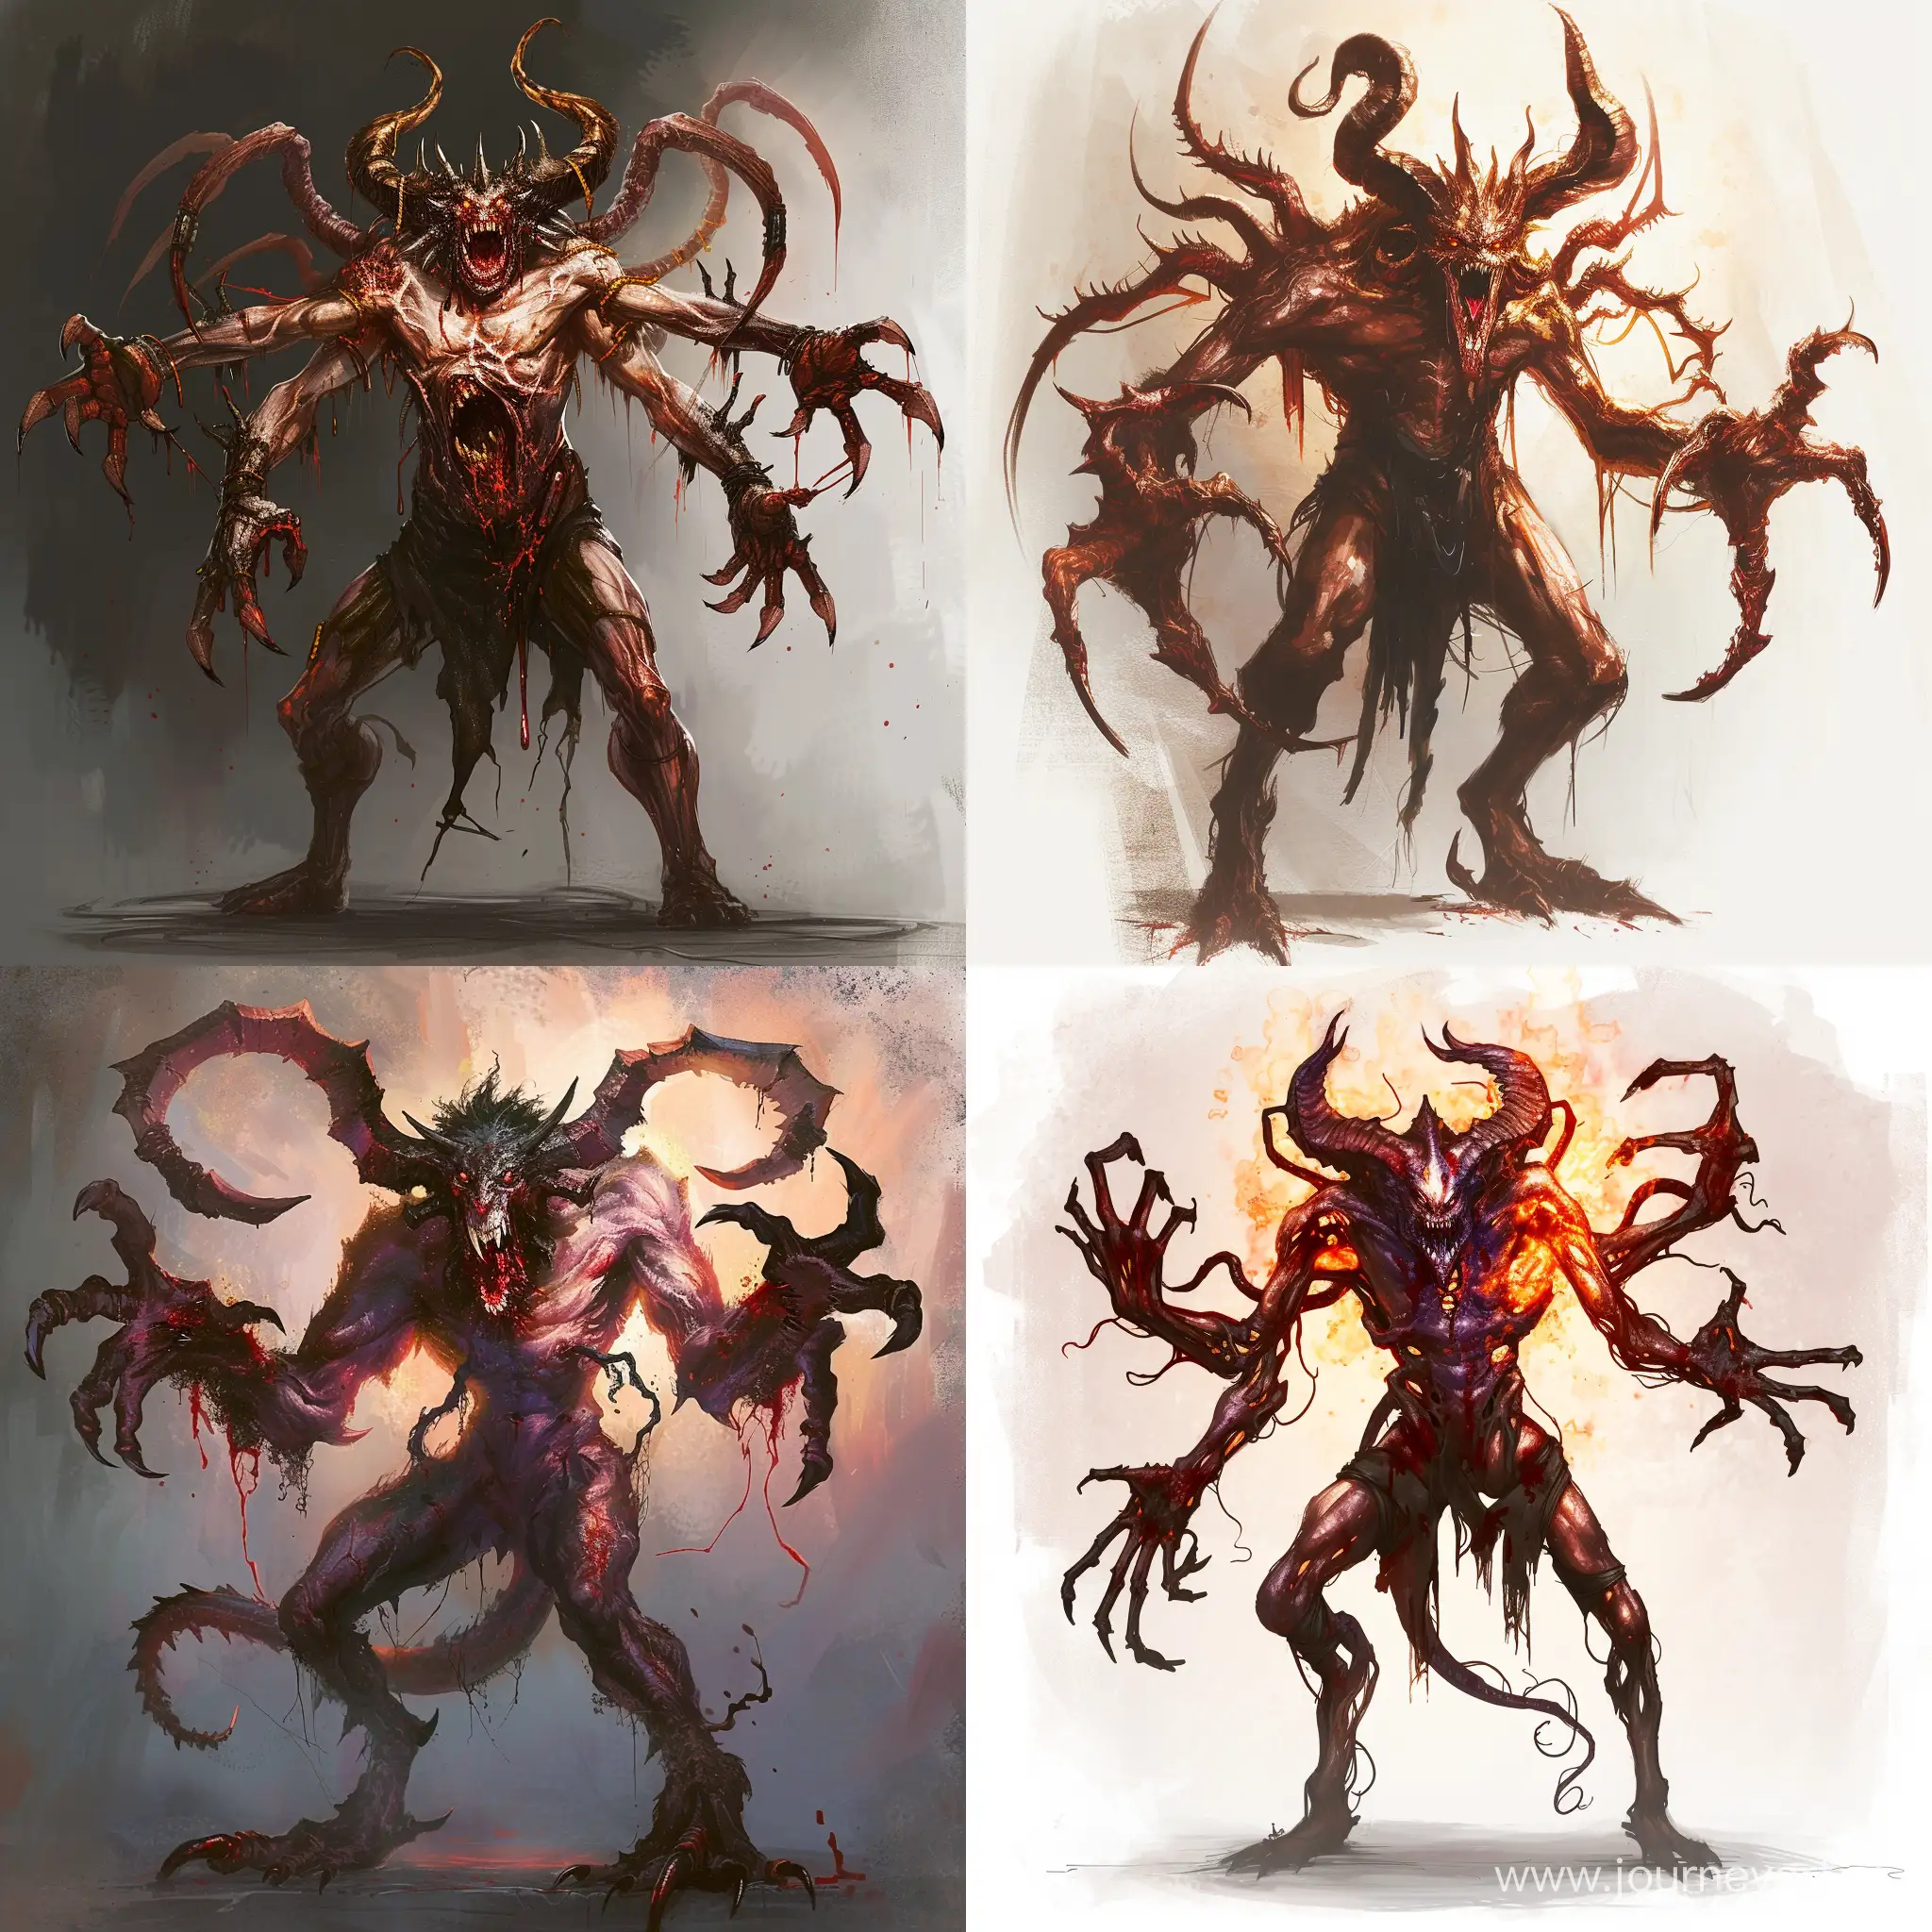 Нарисуй демона, в стиле реализм, для игры, у демона должно быть много рук, он должен быть ростом порядка 4 метров в высоту, добавь больше красок и больше агрессивности для демонов

